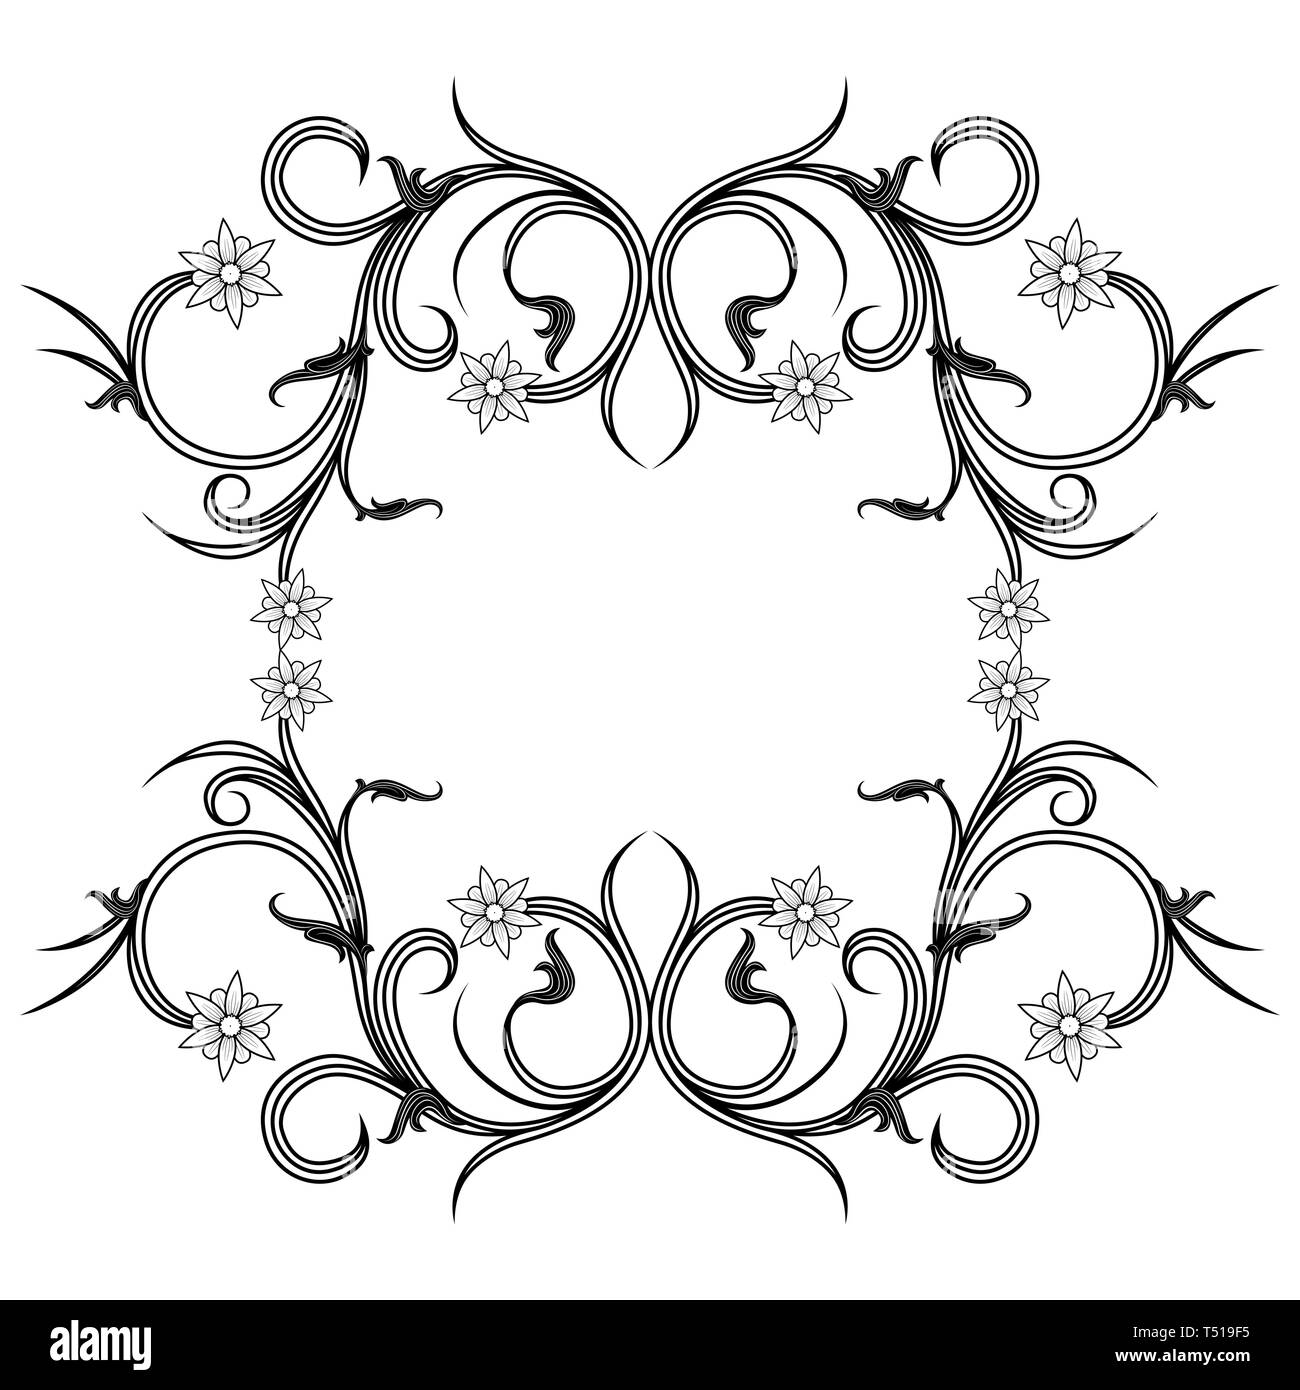 Dekorative Rahmen mit Blumen und interwoven Elemente im viktorianischen Stil auf dem weißen Hintergrund isoliert, Vektor als Element des Designs Stock Vektor